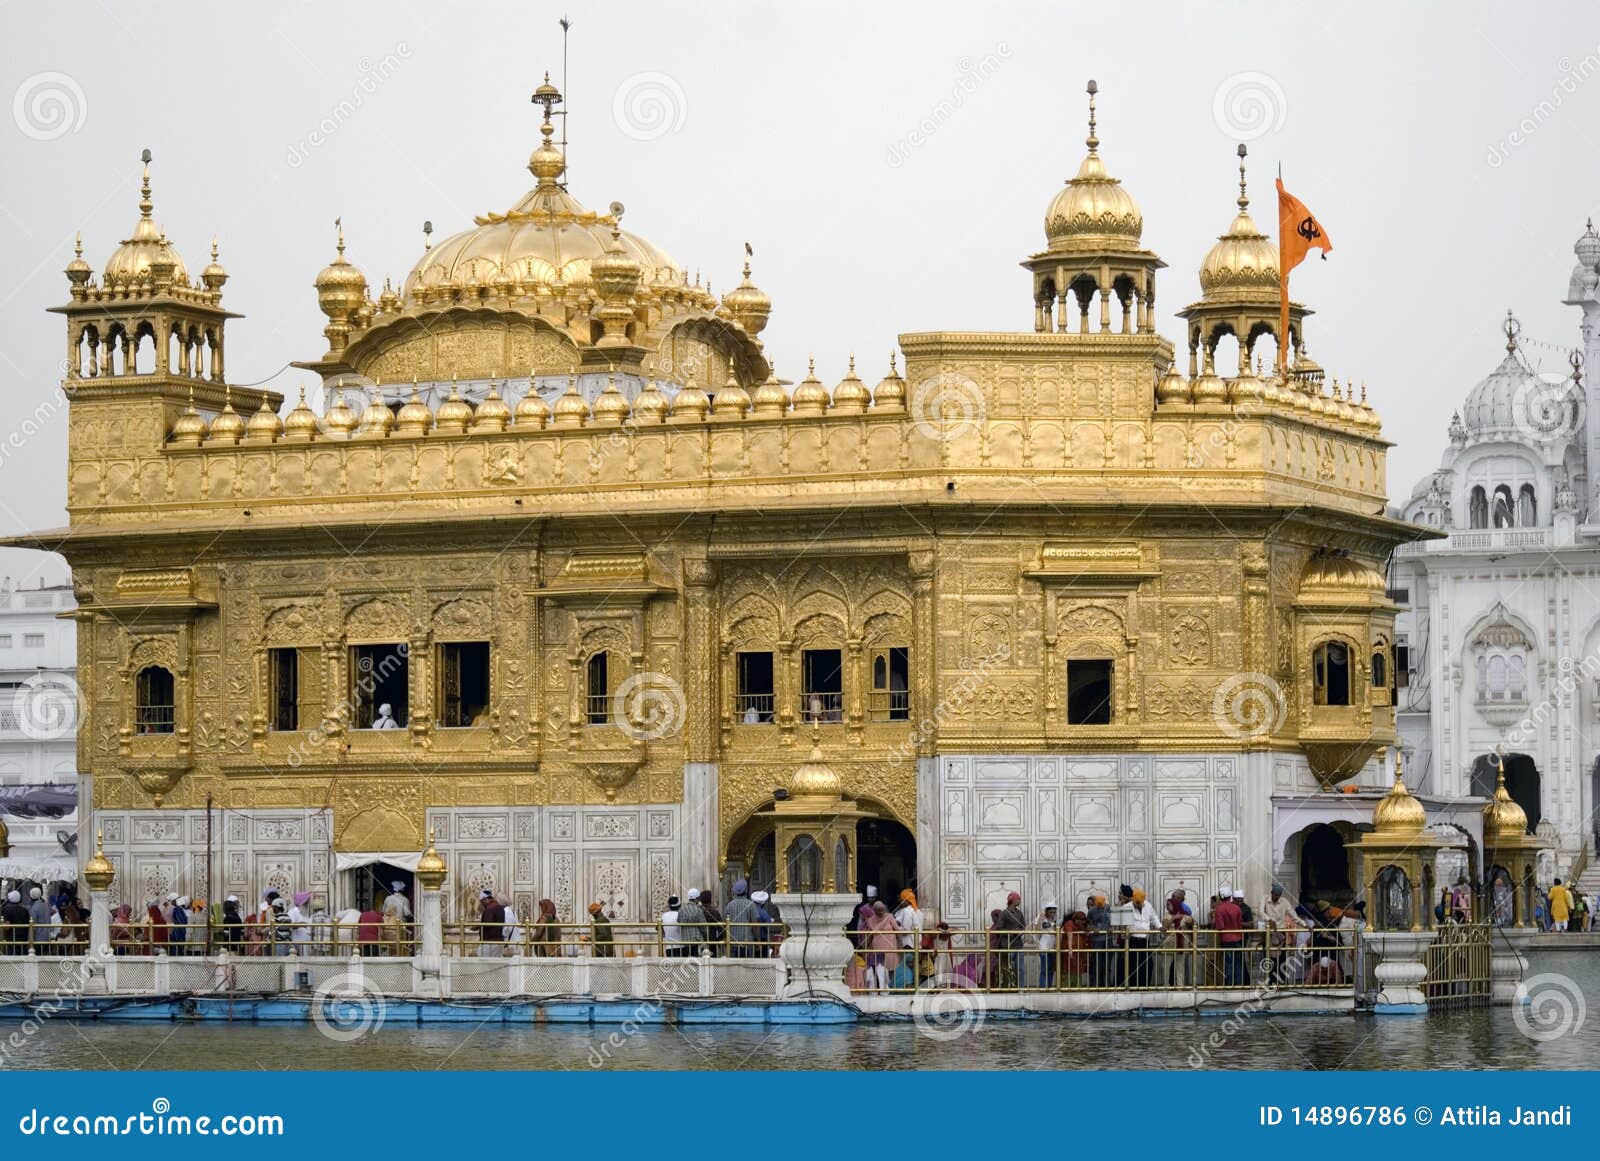 Serene Beauty Of The Golden Temple In Amritsar - onlyprathamesh